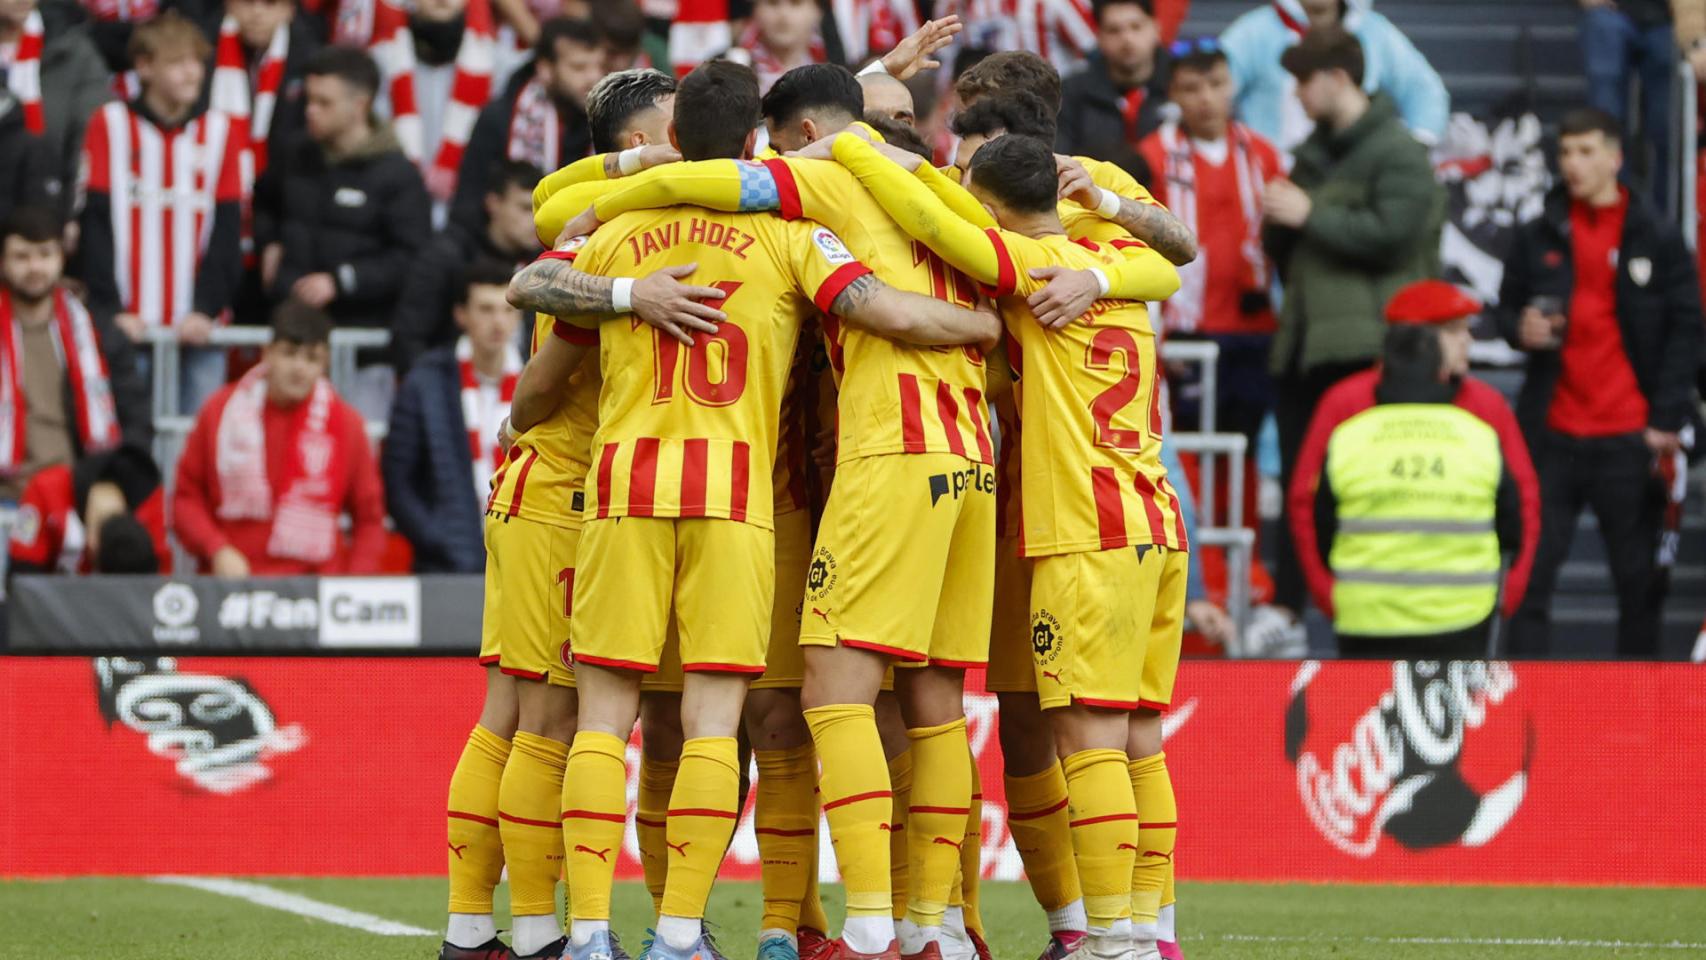 Athletic 2-3 Girona, La Liga: resultado, goles y estadísticas del partido